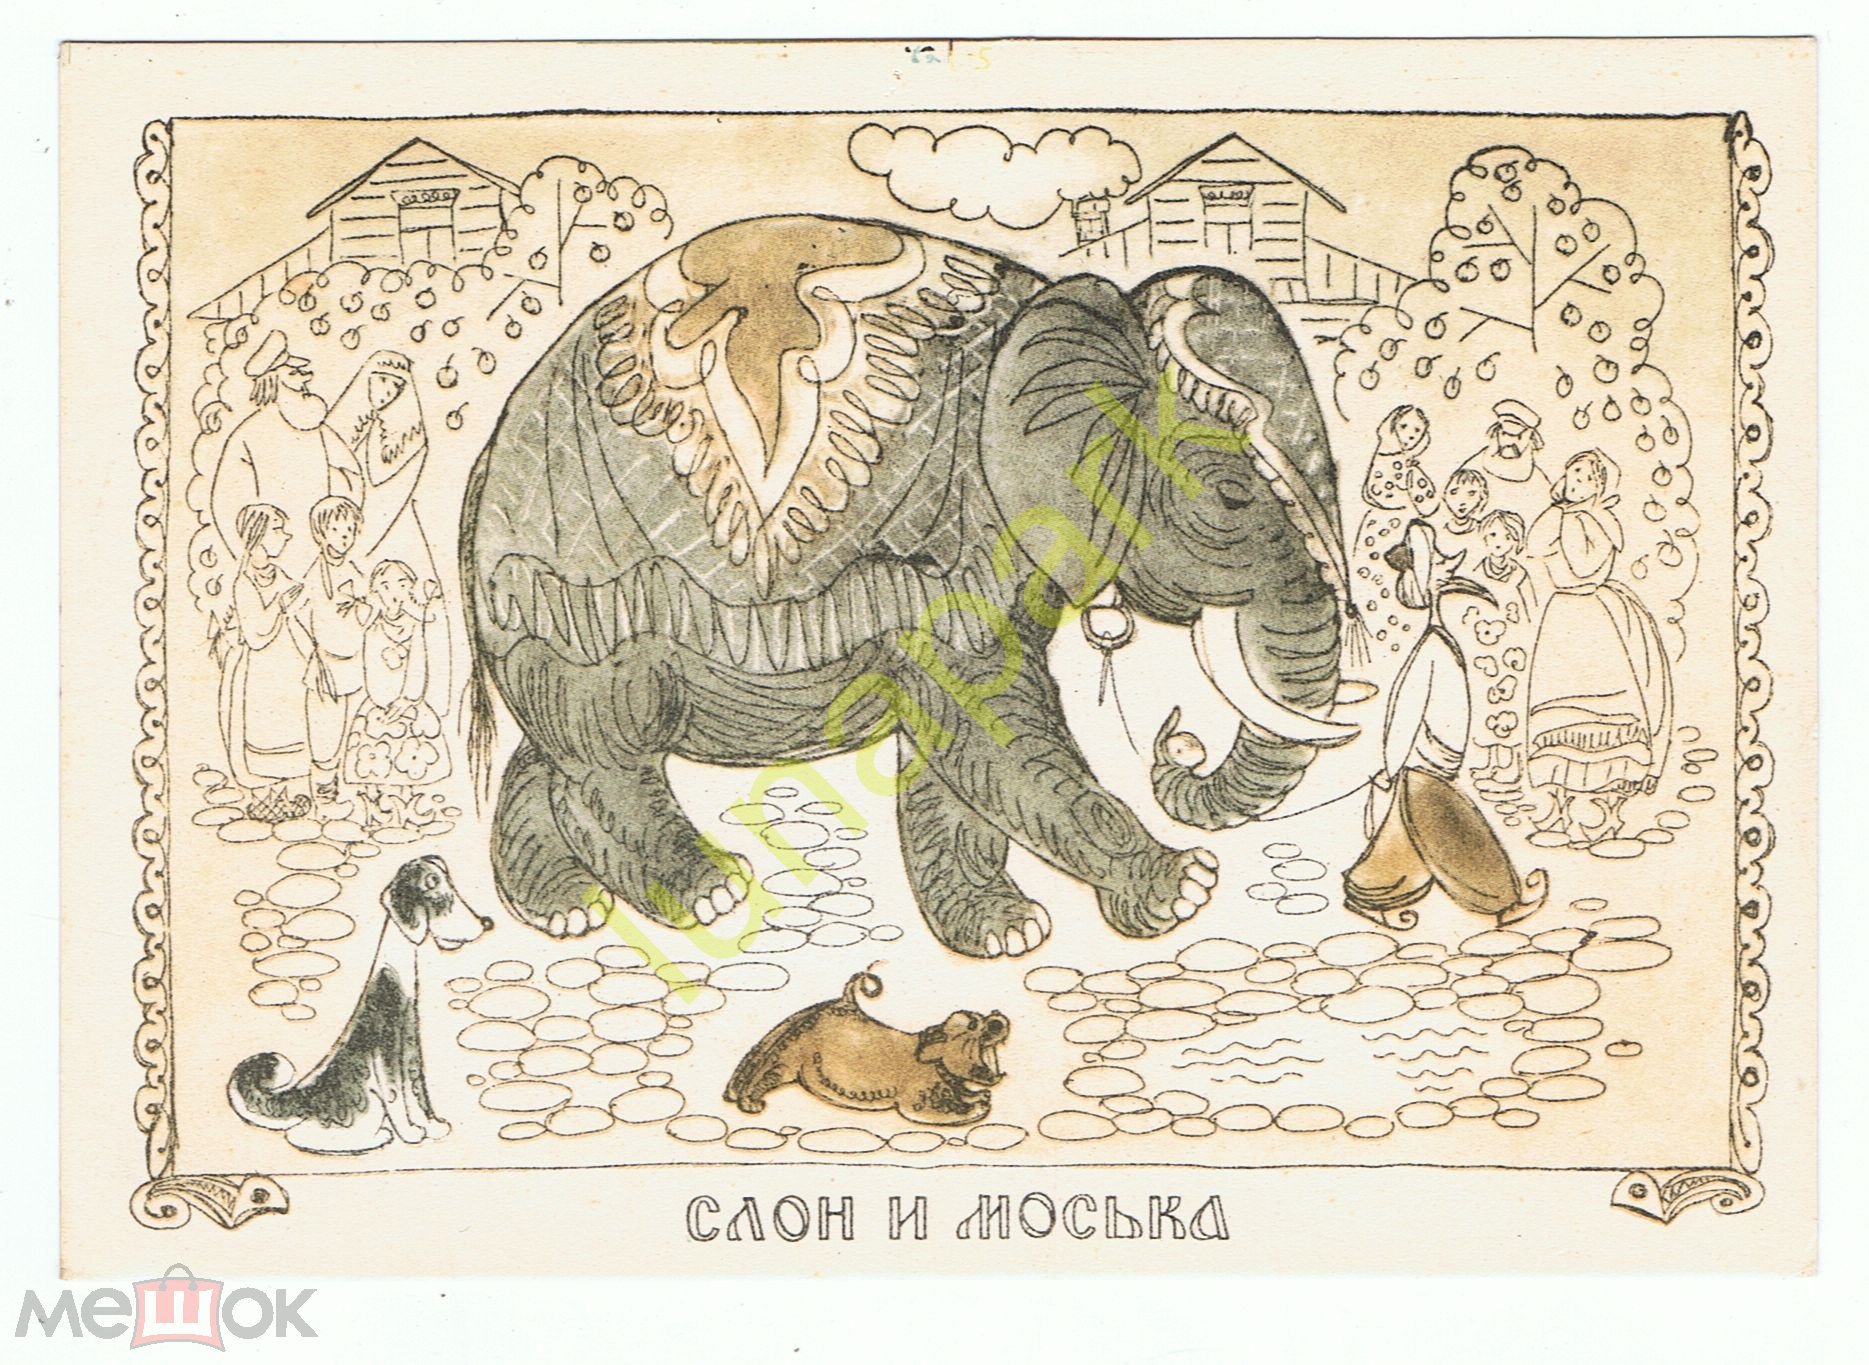 Басня Крылова слон и моська. Иллюстрация к басне слон и моська. Иллюстрация к басне Крылова слон и моська. И.А. Крылов слон и моська.